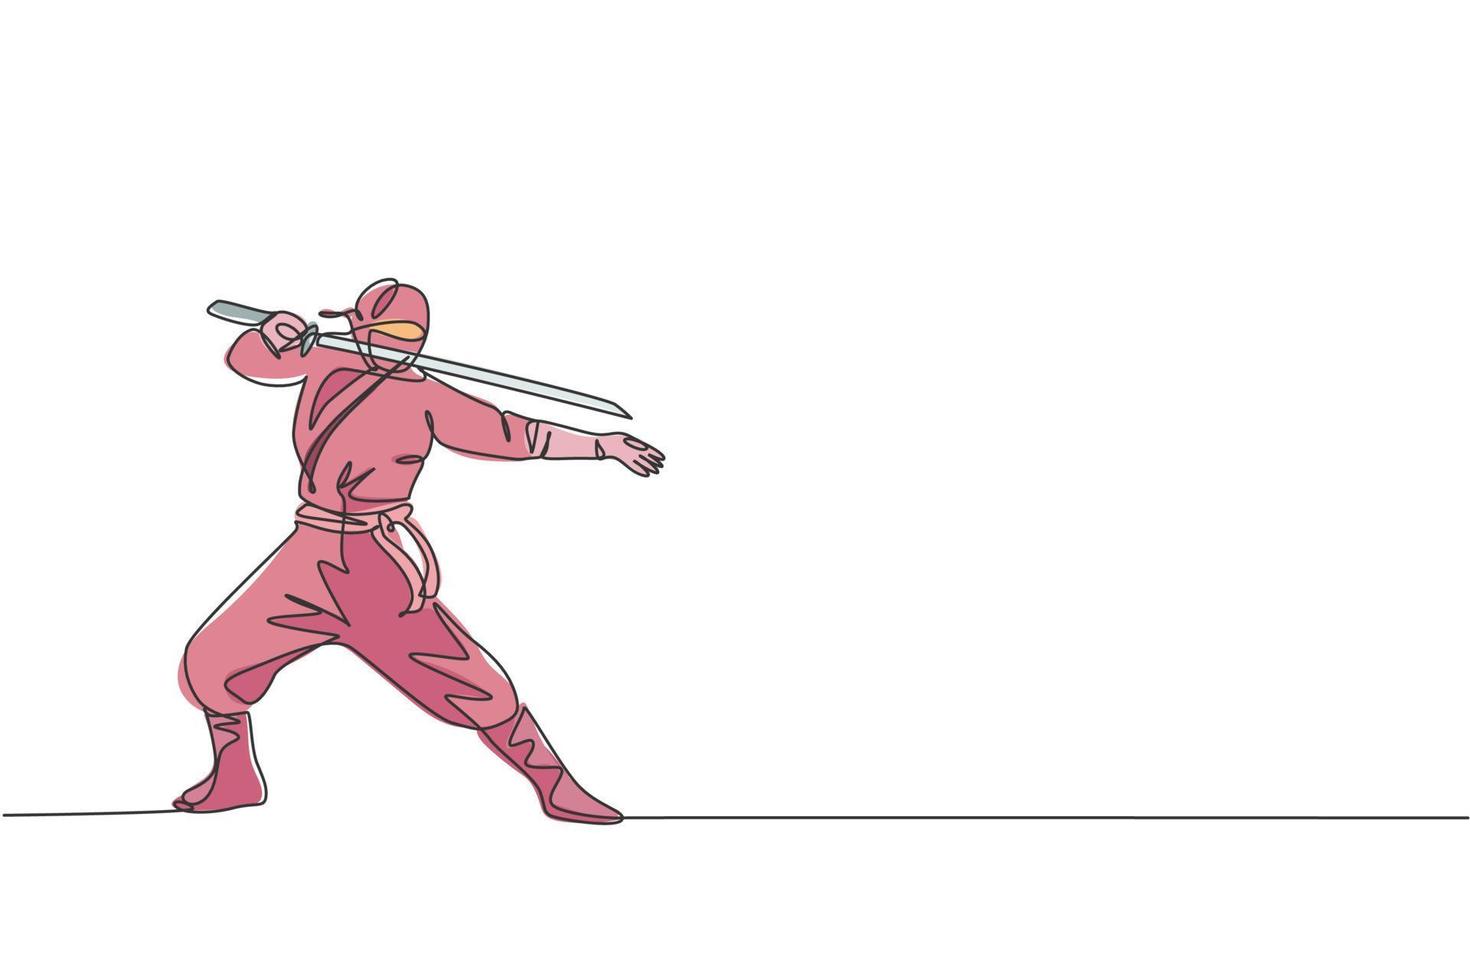 dessin en ligne continue d'un jeune guerrier ninja de la culture japonaise sur un costume de masque avec une pose de position d'attaque. concept de samouraï de combat d'art martial. illustration vectorielle de conception de dessin à une ligne à la mode vecteur